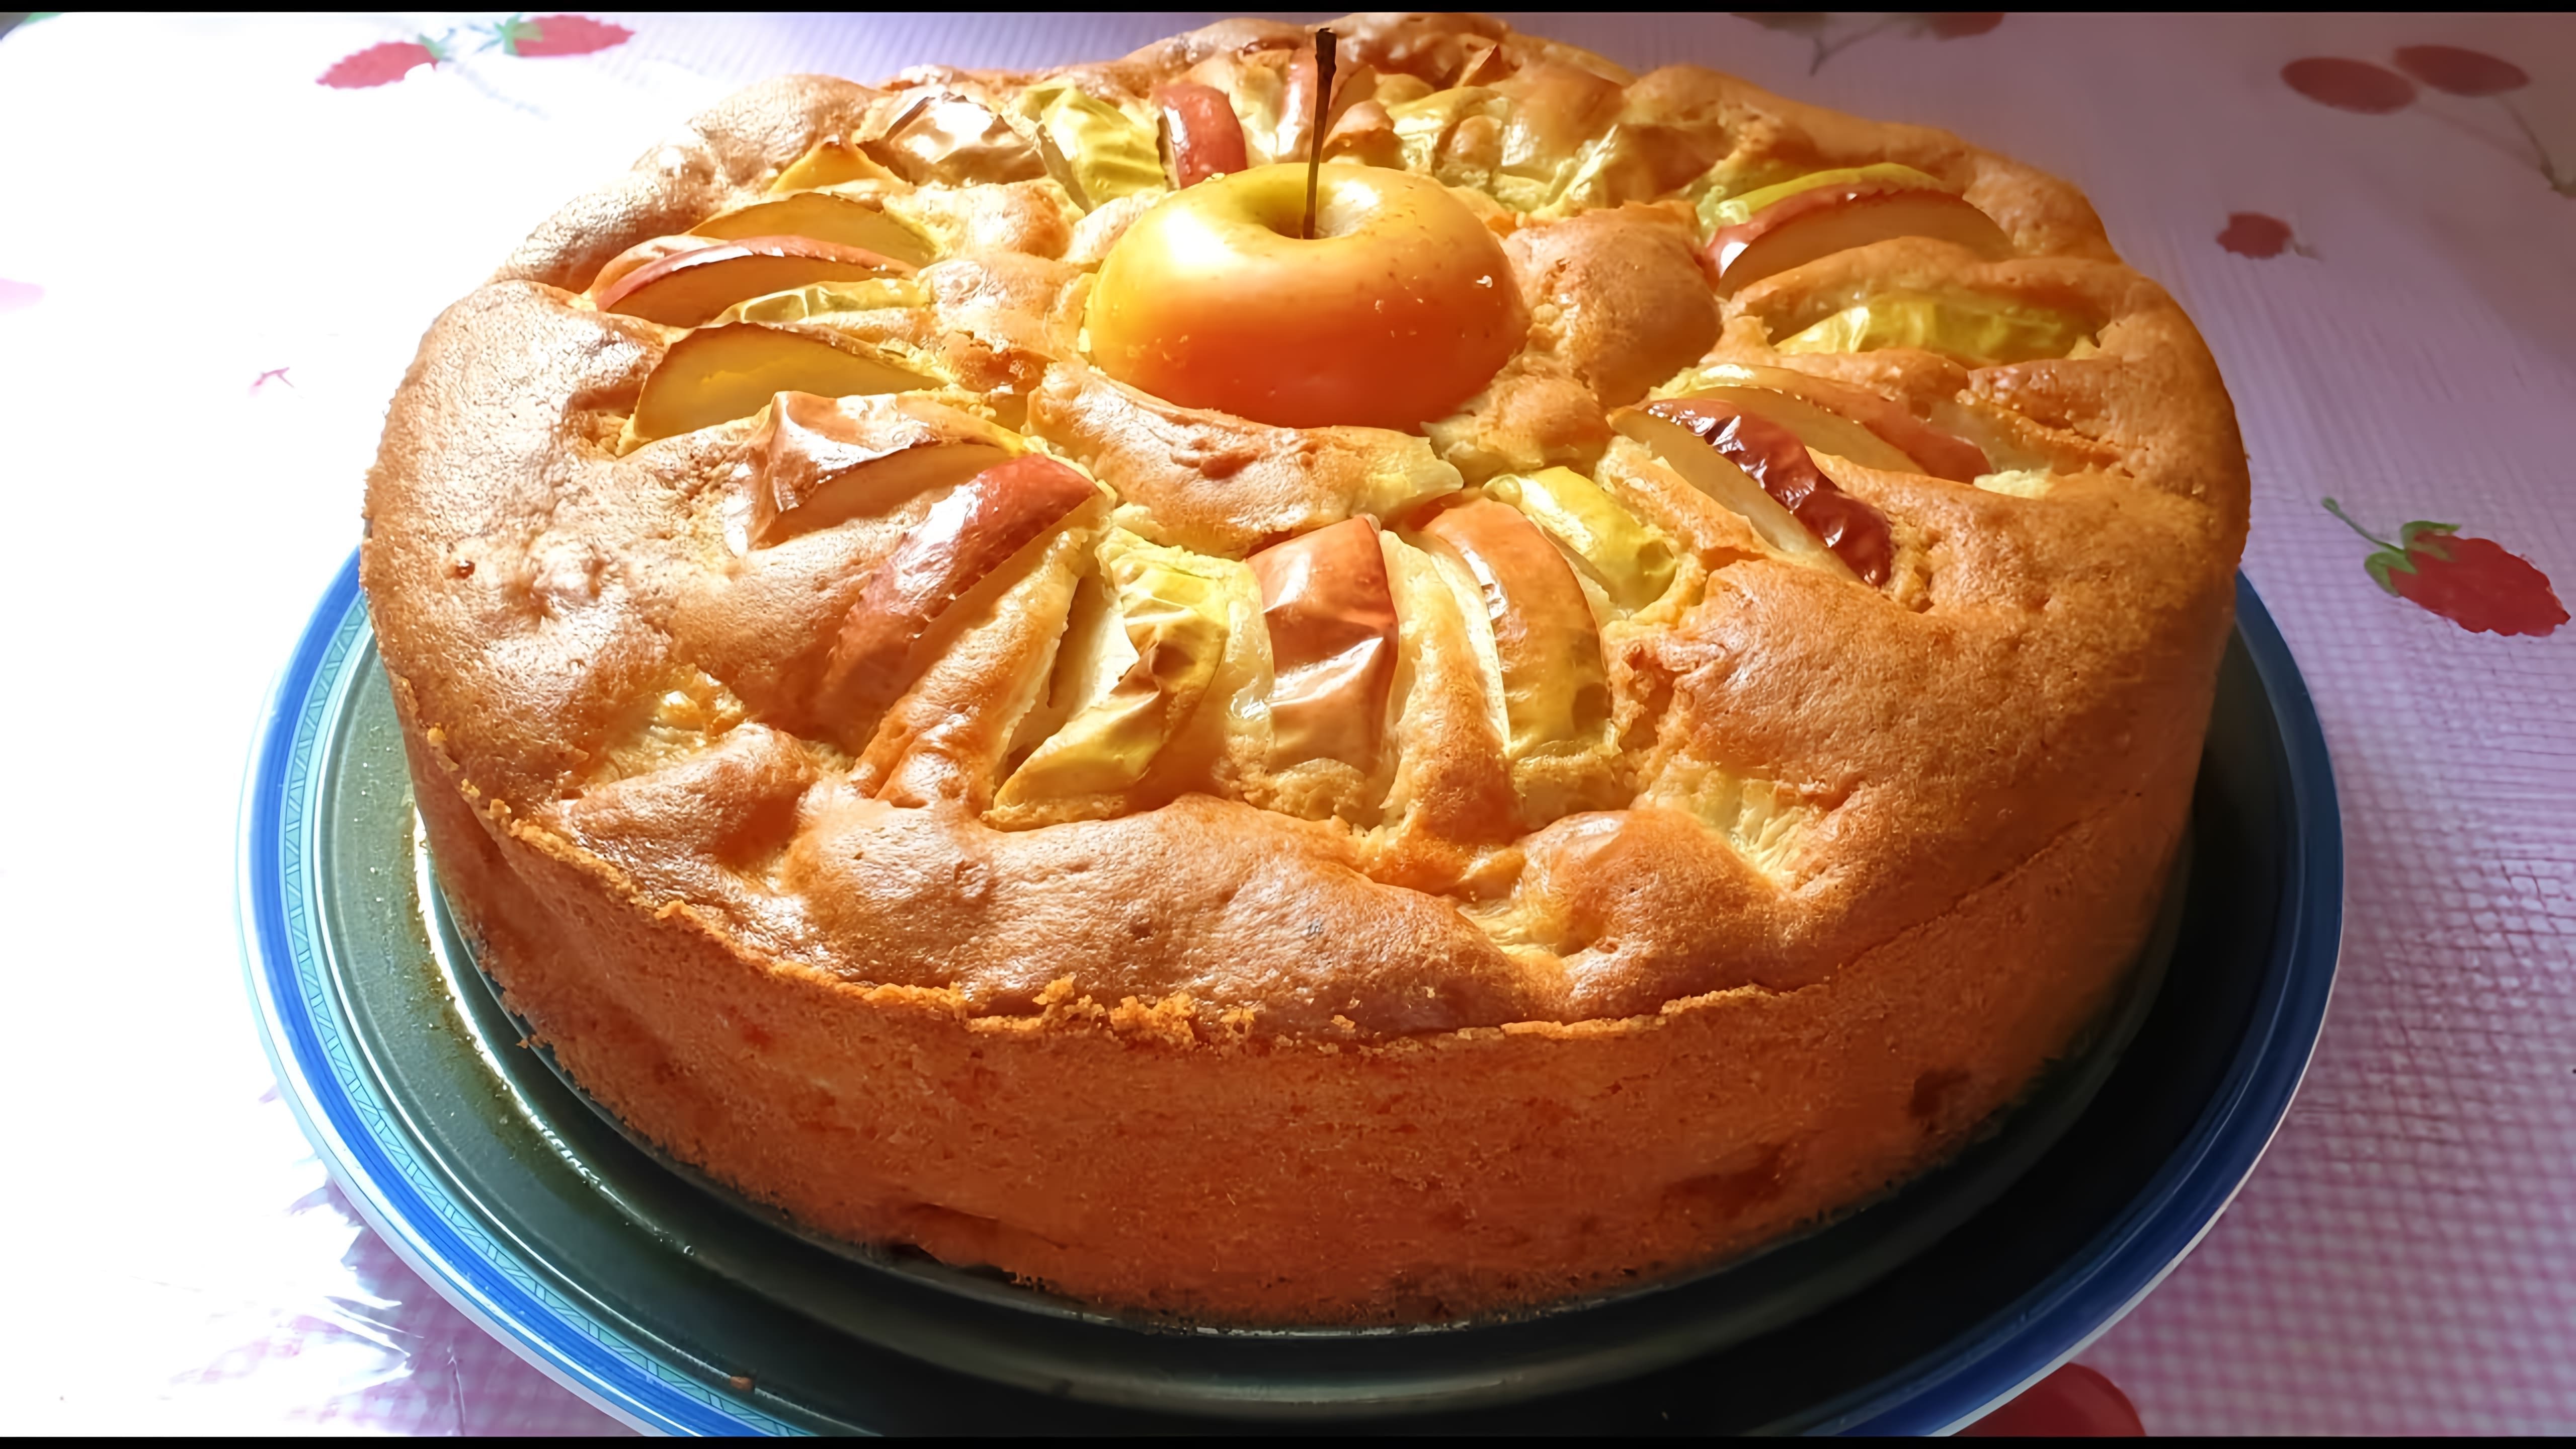 В этом видео демонстрируется процесс приготовления яблочного пирога